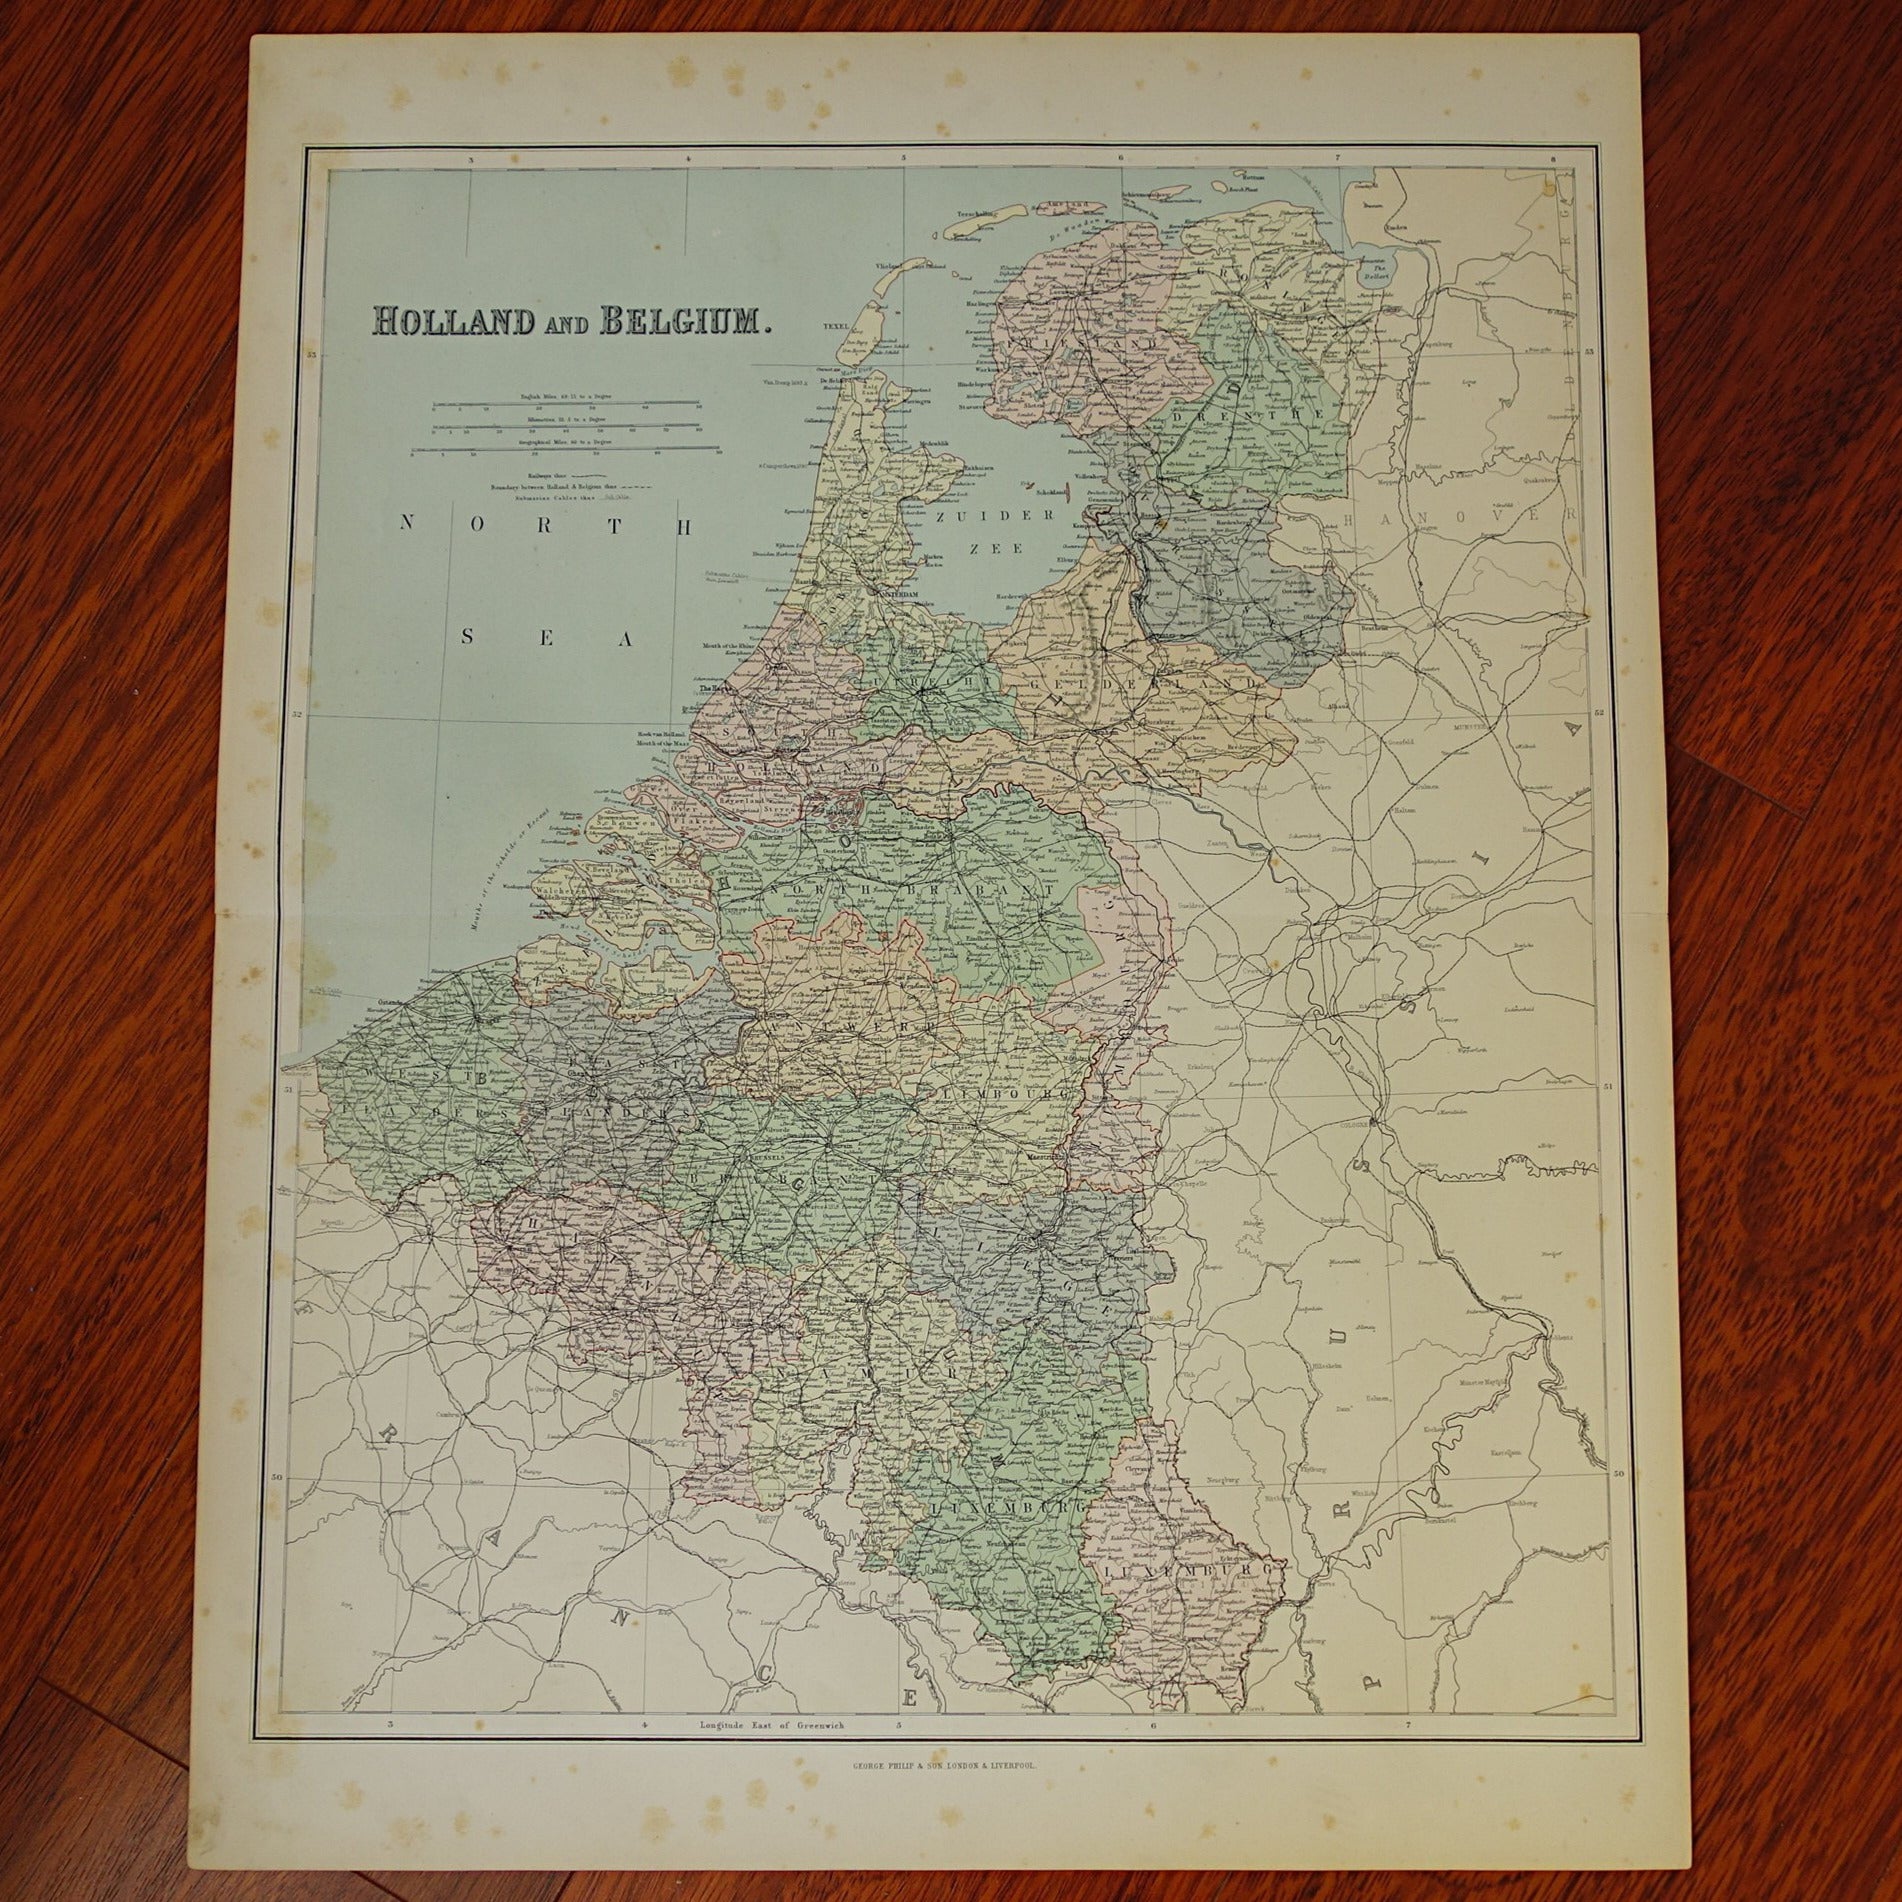 Op risico Bedelen Andrew Halliday NEDERLAND grote oude landkaart van Nederland uit 1890 originele antiek –  Oudekaarten.com